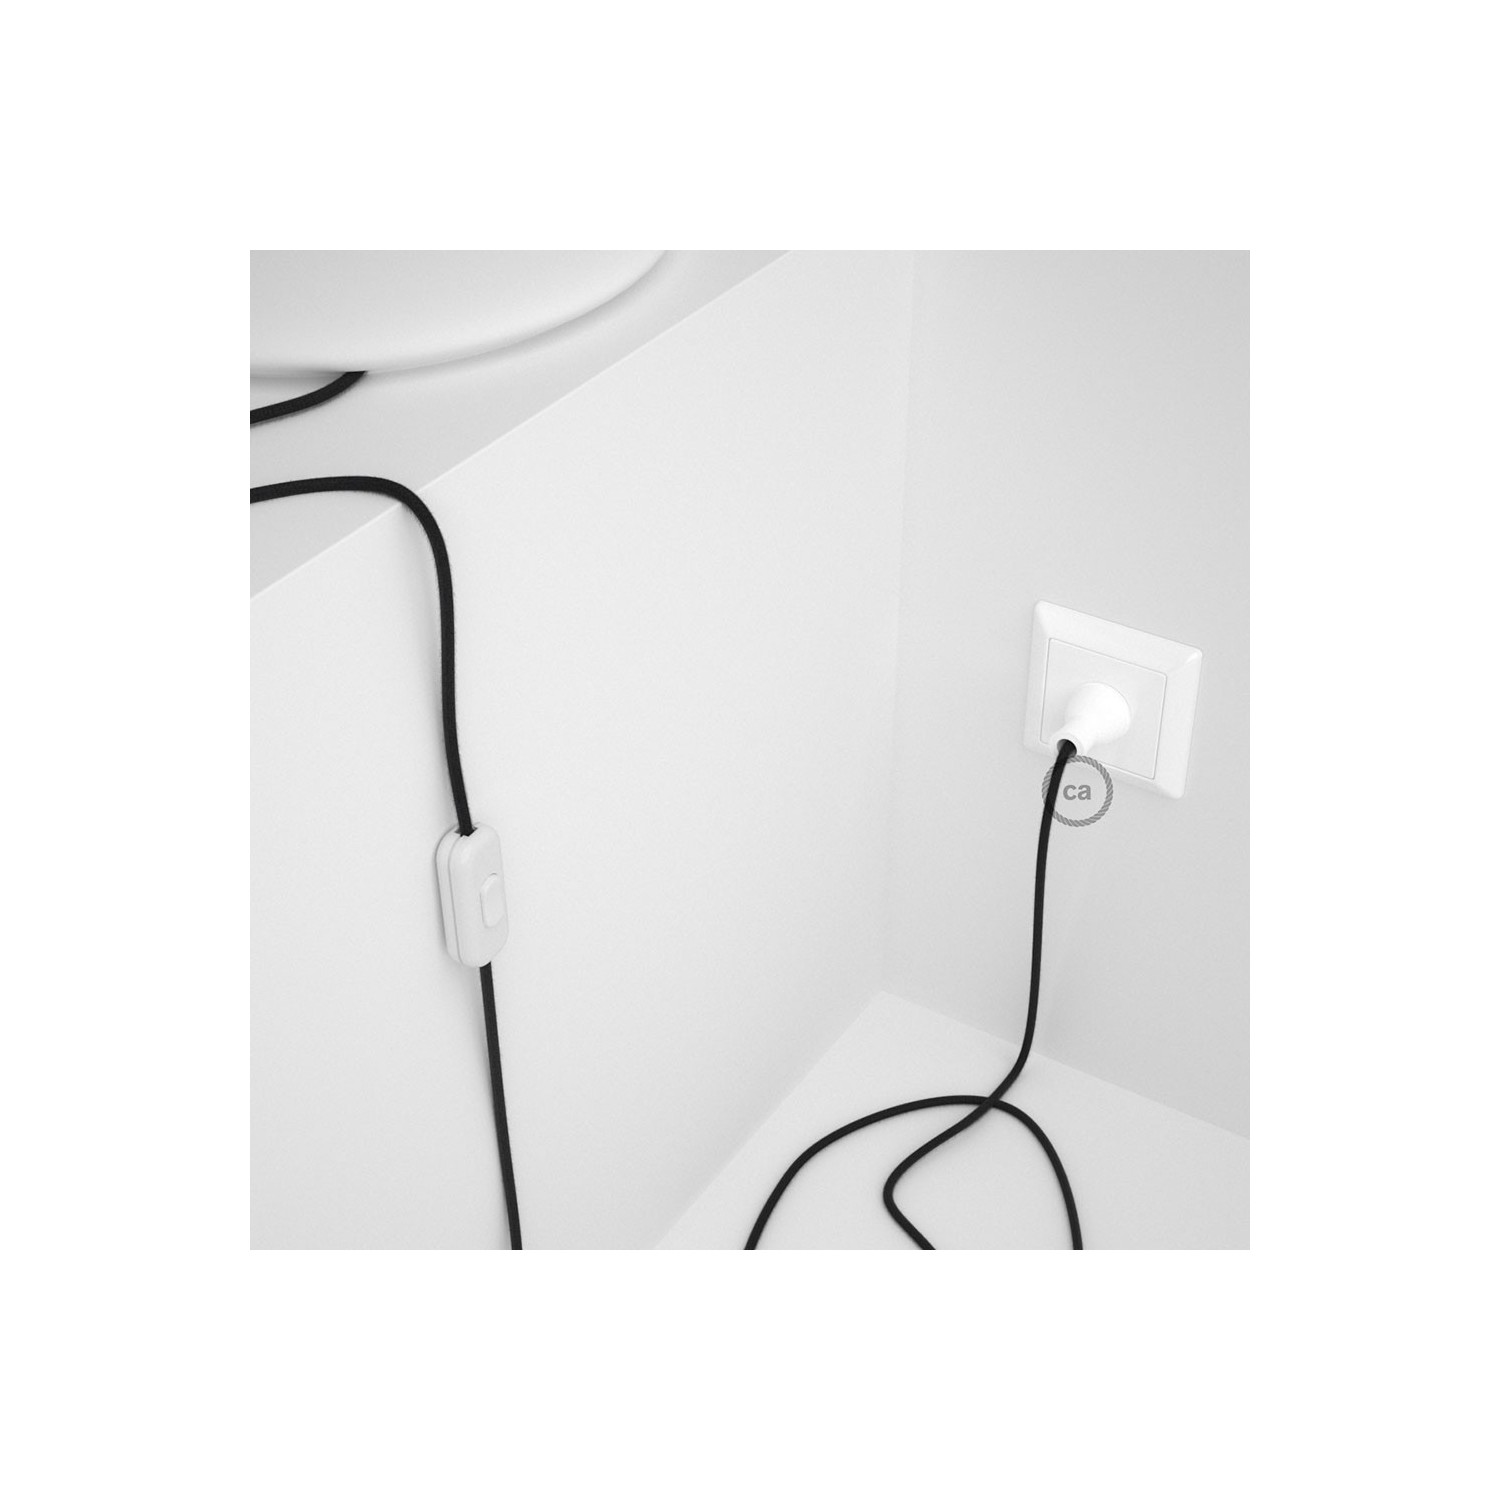 Cableado para lámpara de mesa, cable RC04 Algodón Negro 1,8 m. Elige el color de la clavija y del interruptor!